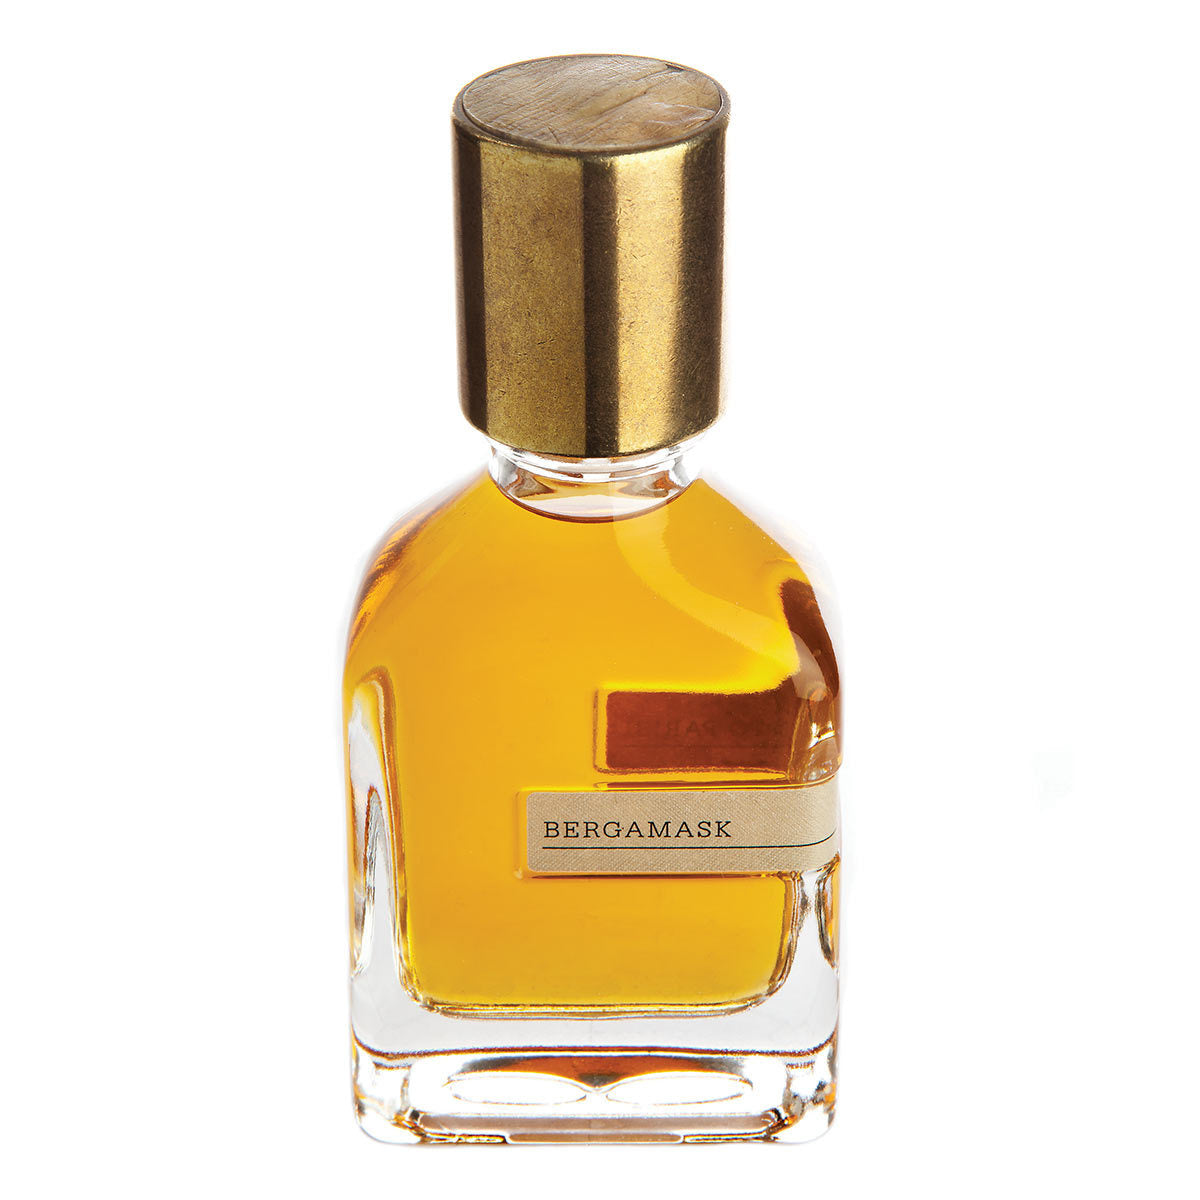 Primary image of Bergamask Eau de Parfum